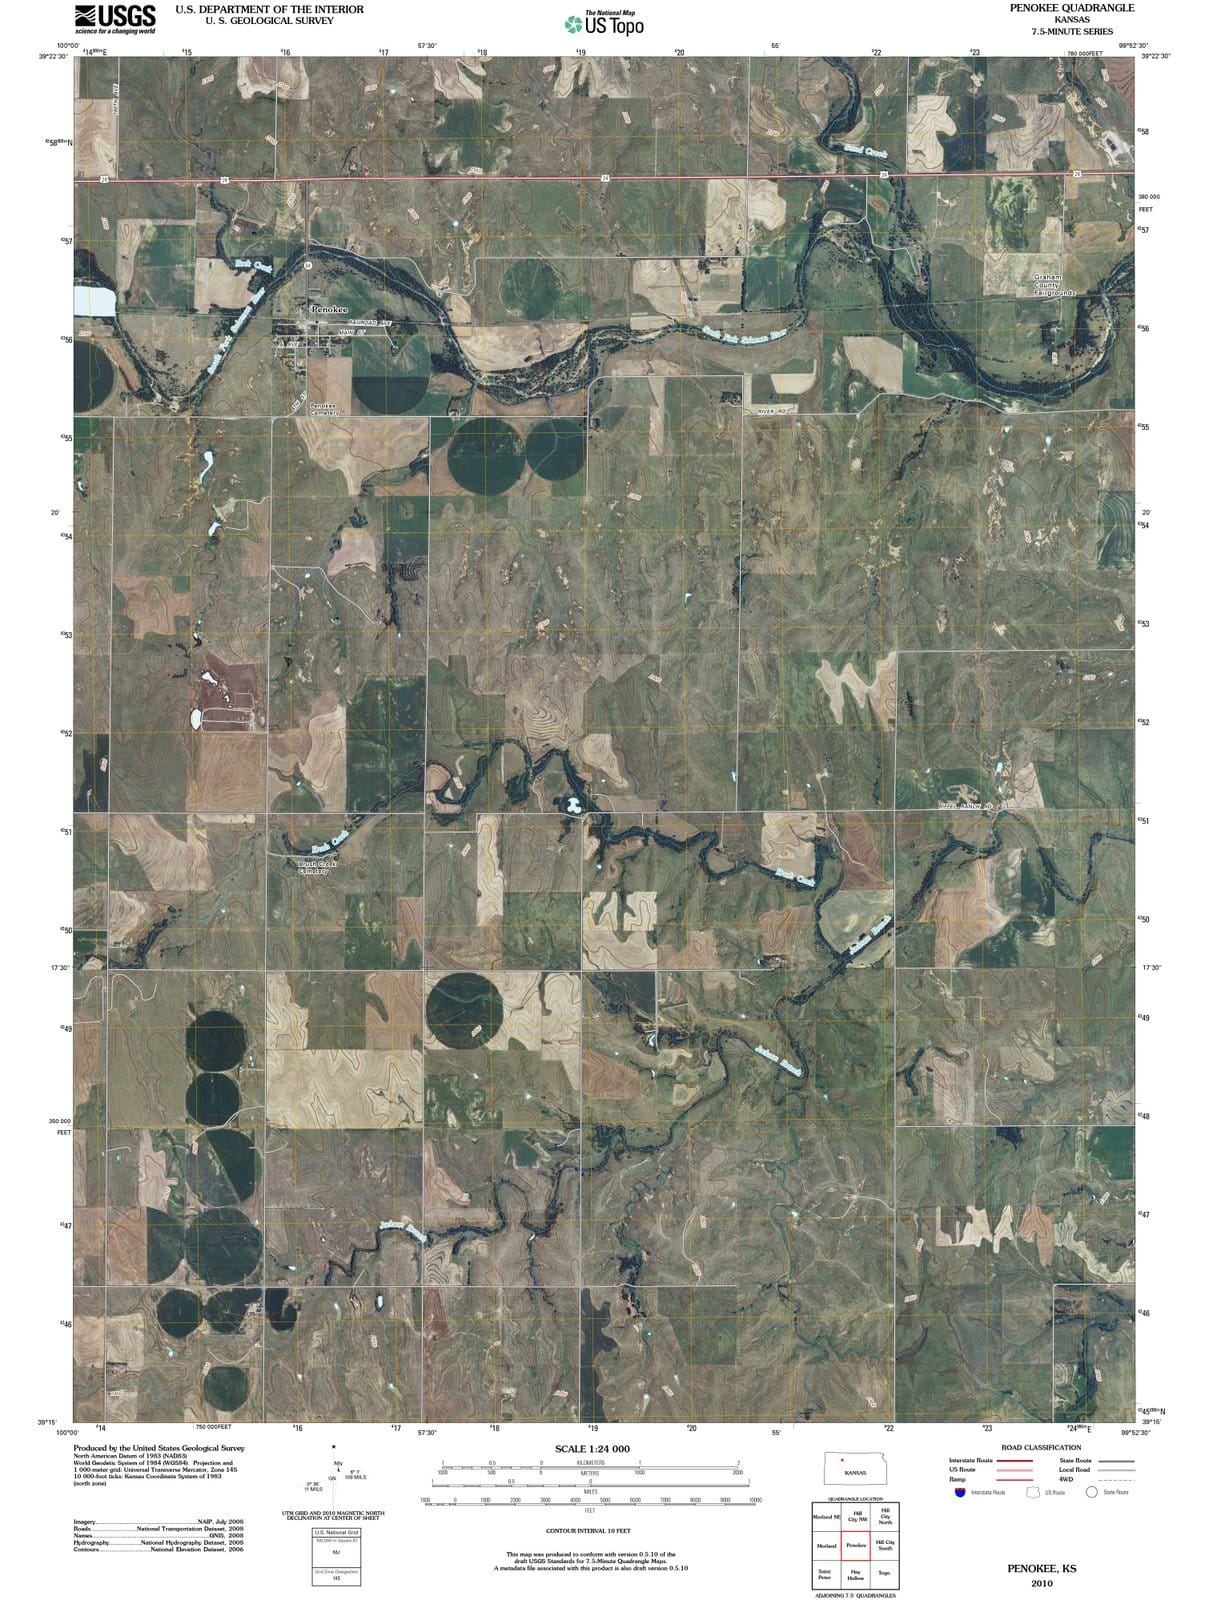 2010 Penokee, KS - Kansas - USGS Topographic Map